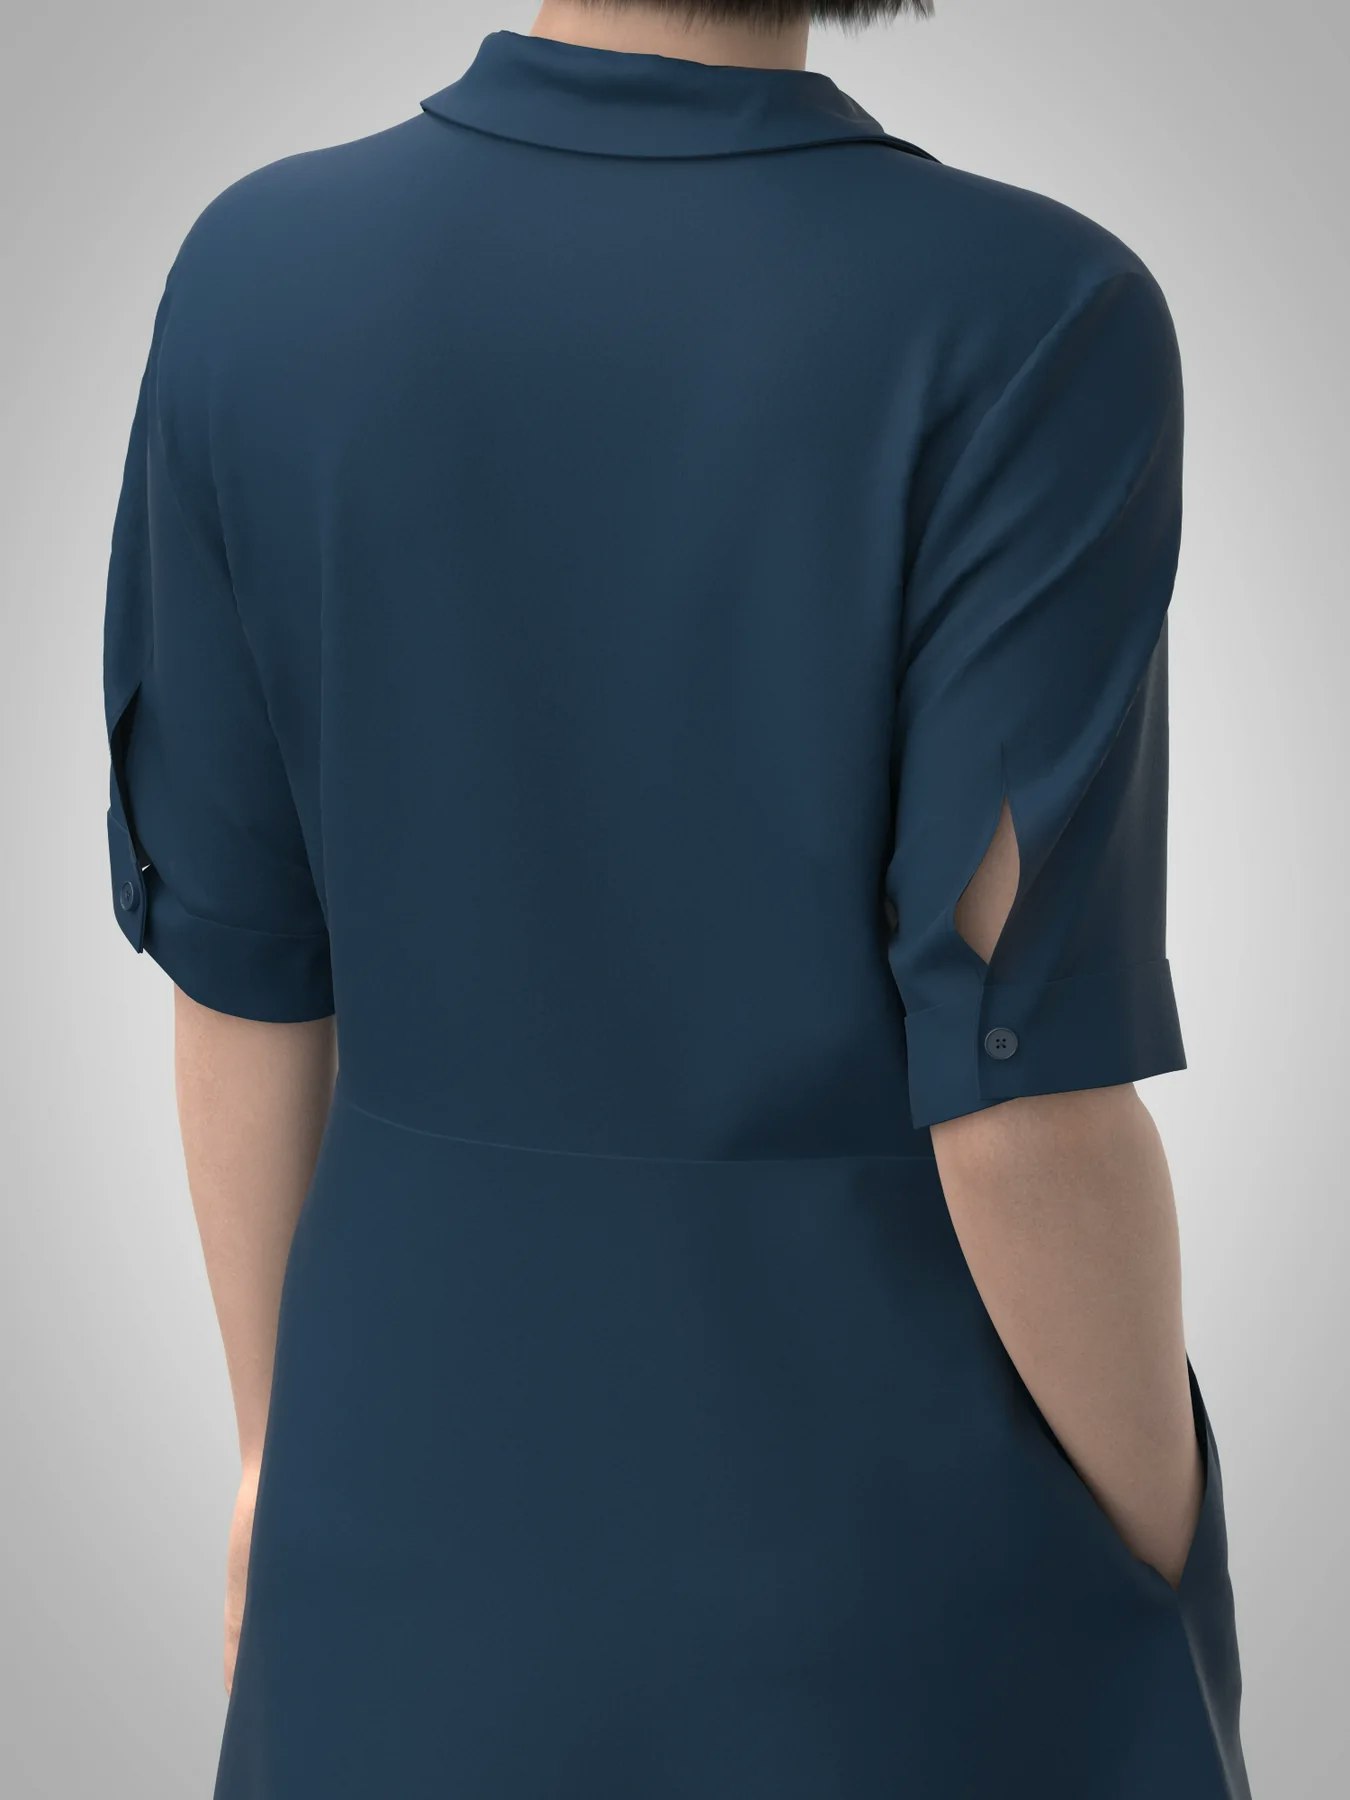 Shirt Dress (XL-3XL)